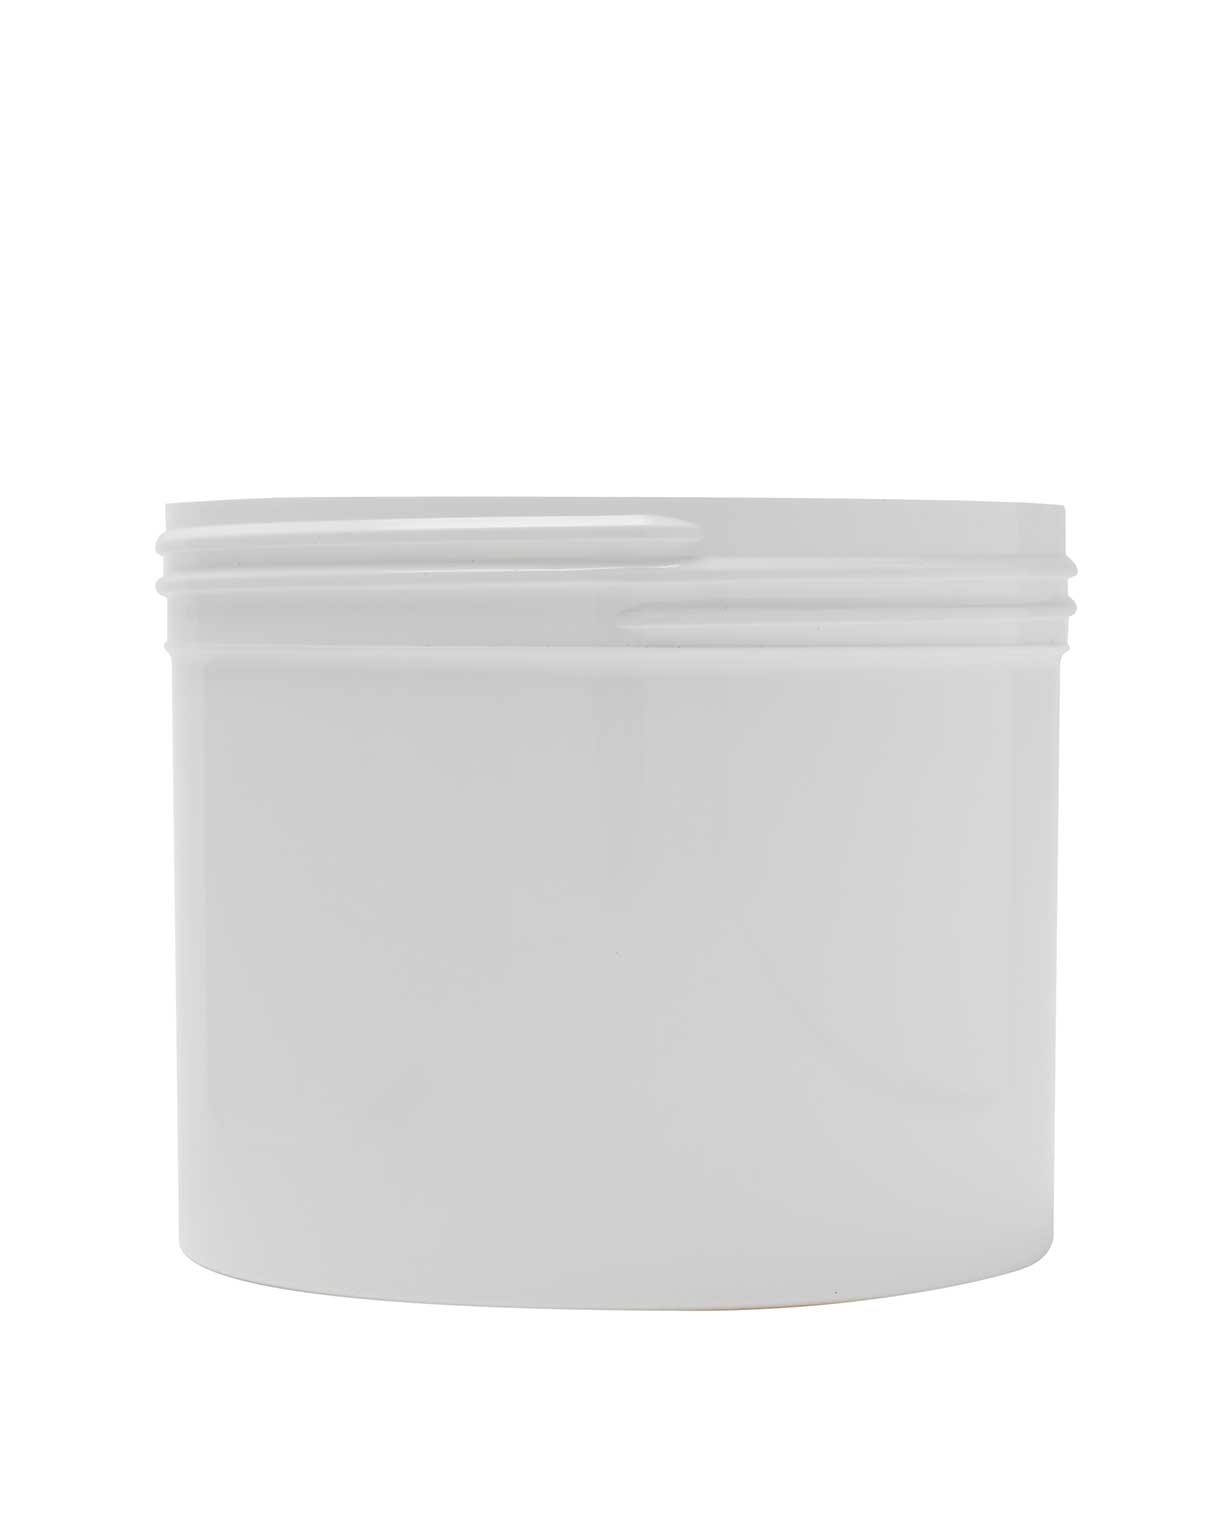 32 oz pp white regular wall jar 120-400